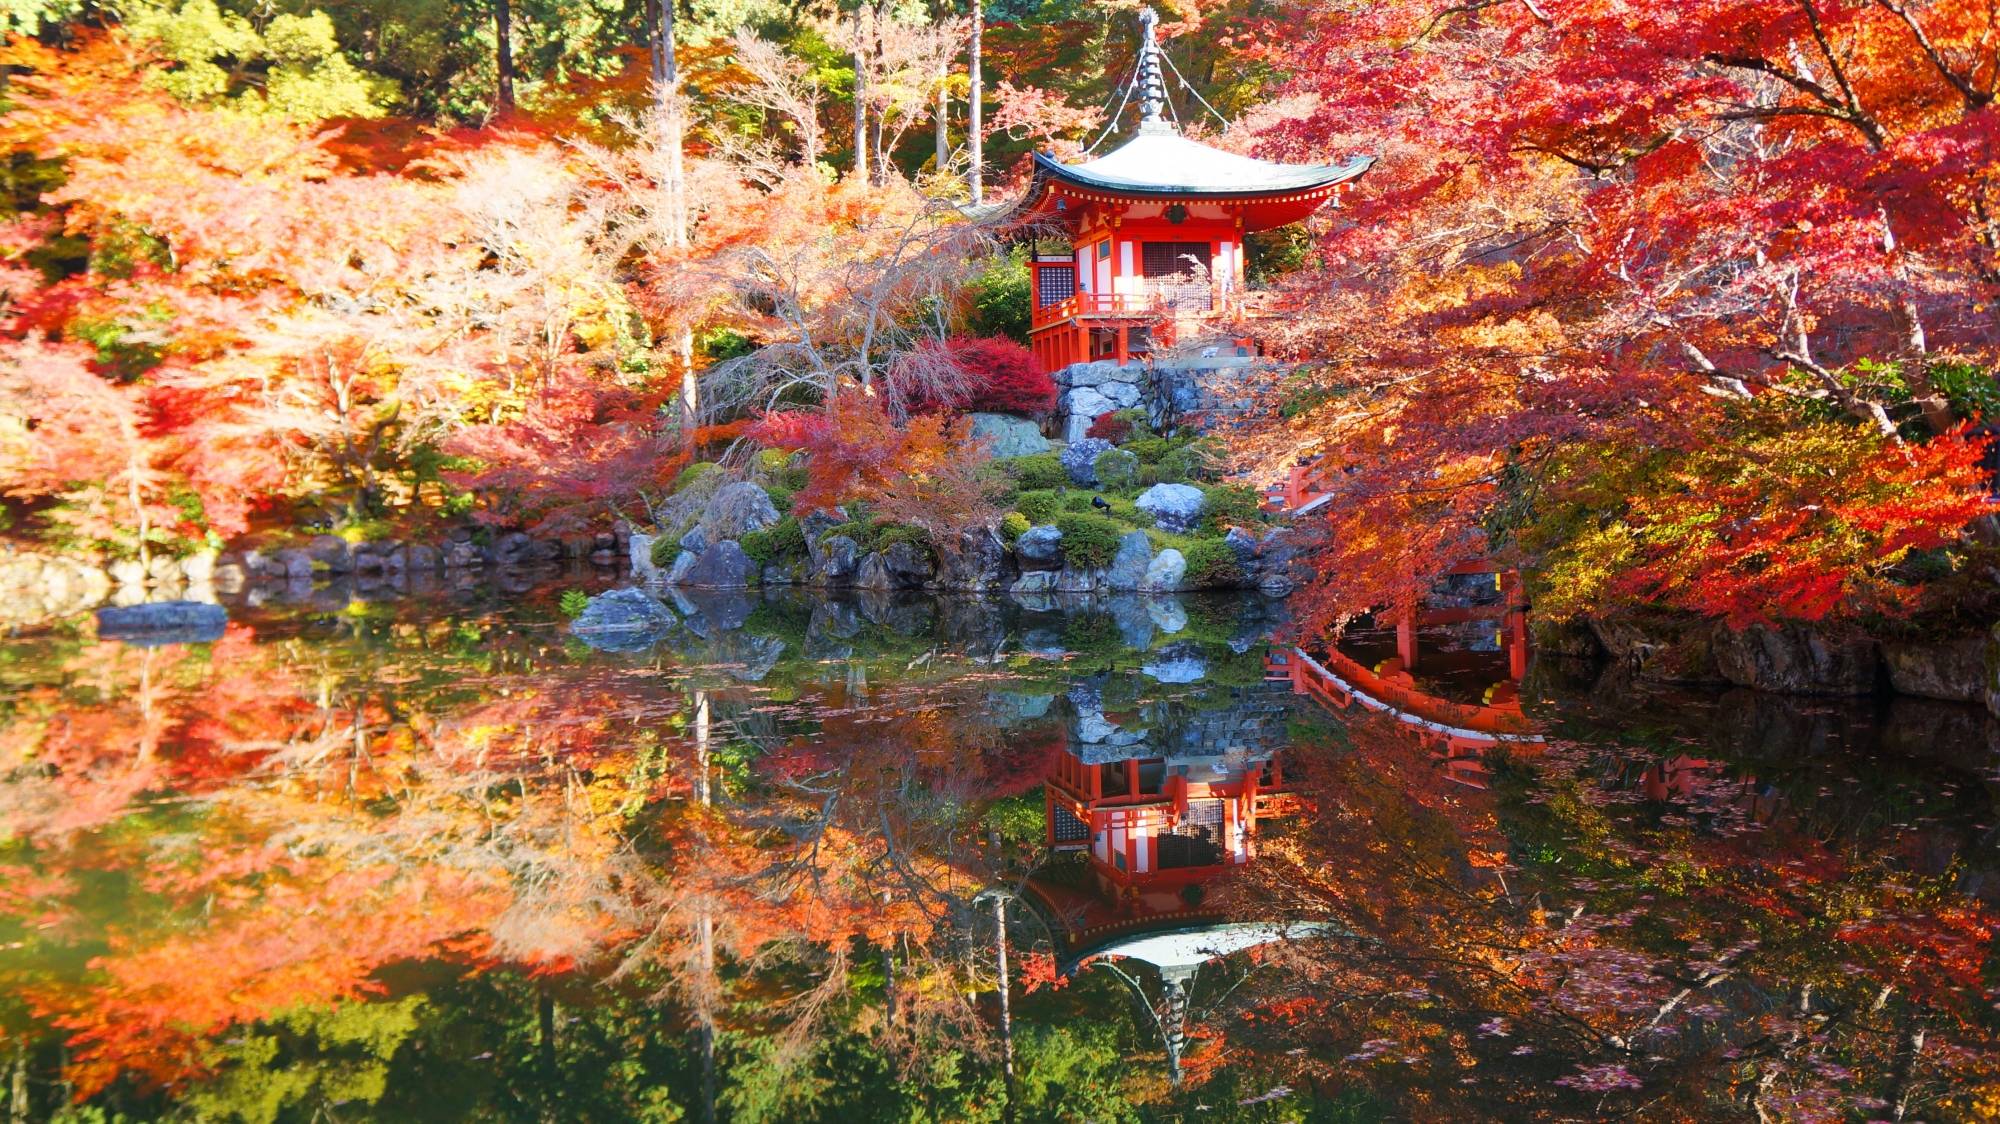 醍醐寺の華やかな紅葉と水鏡